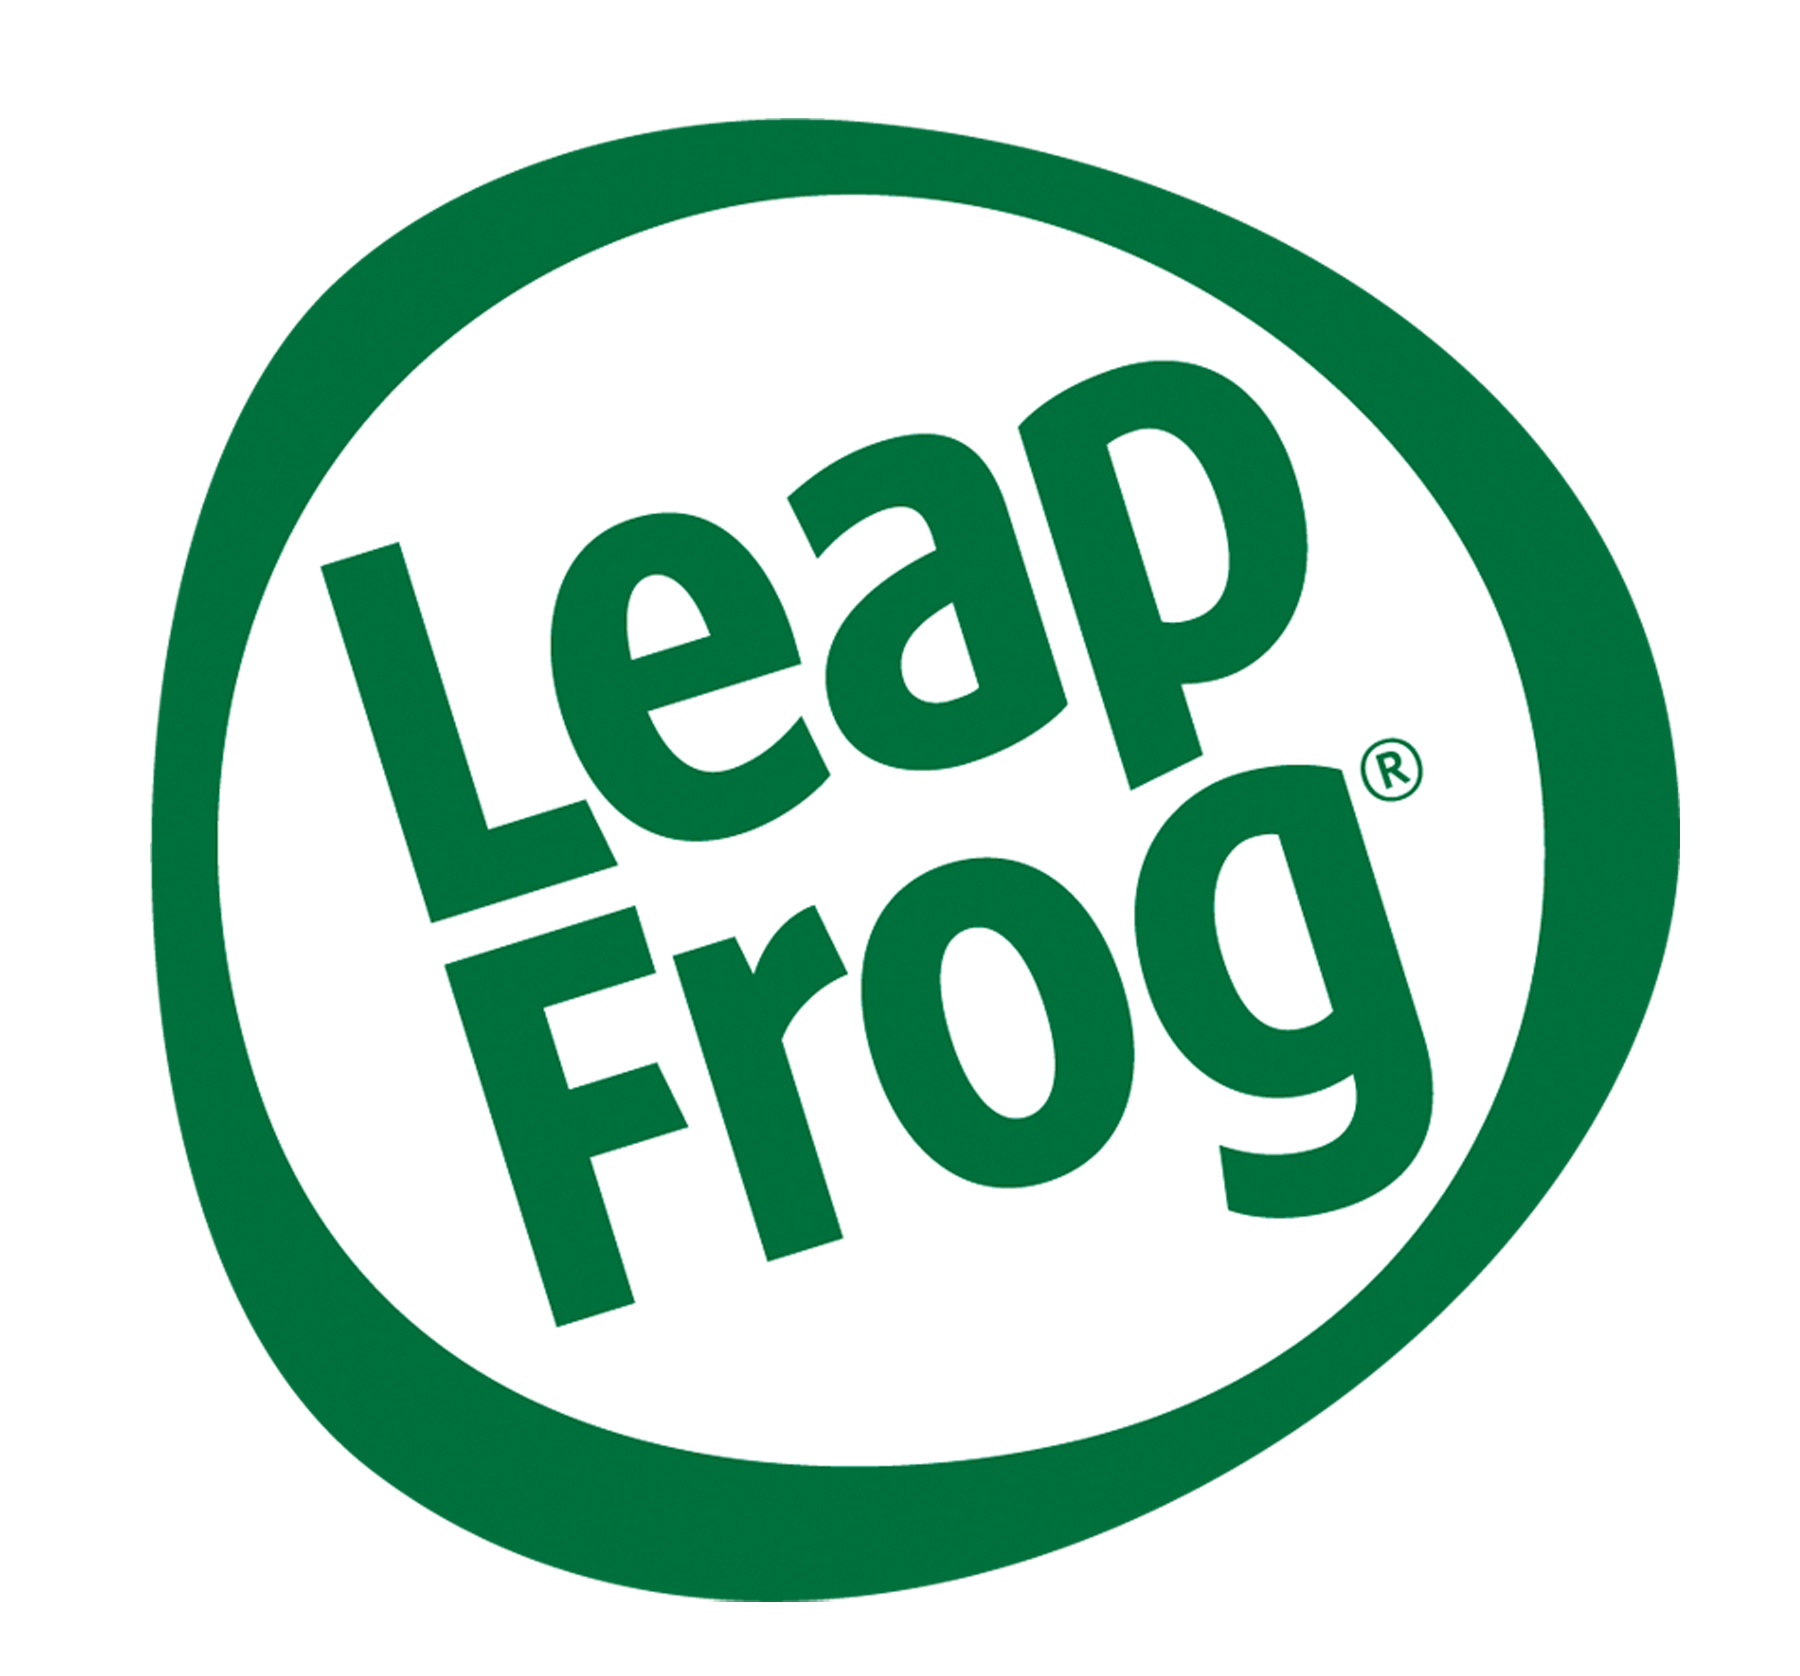 Leapfrog_logo